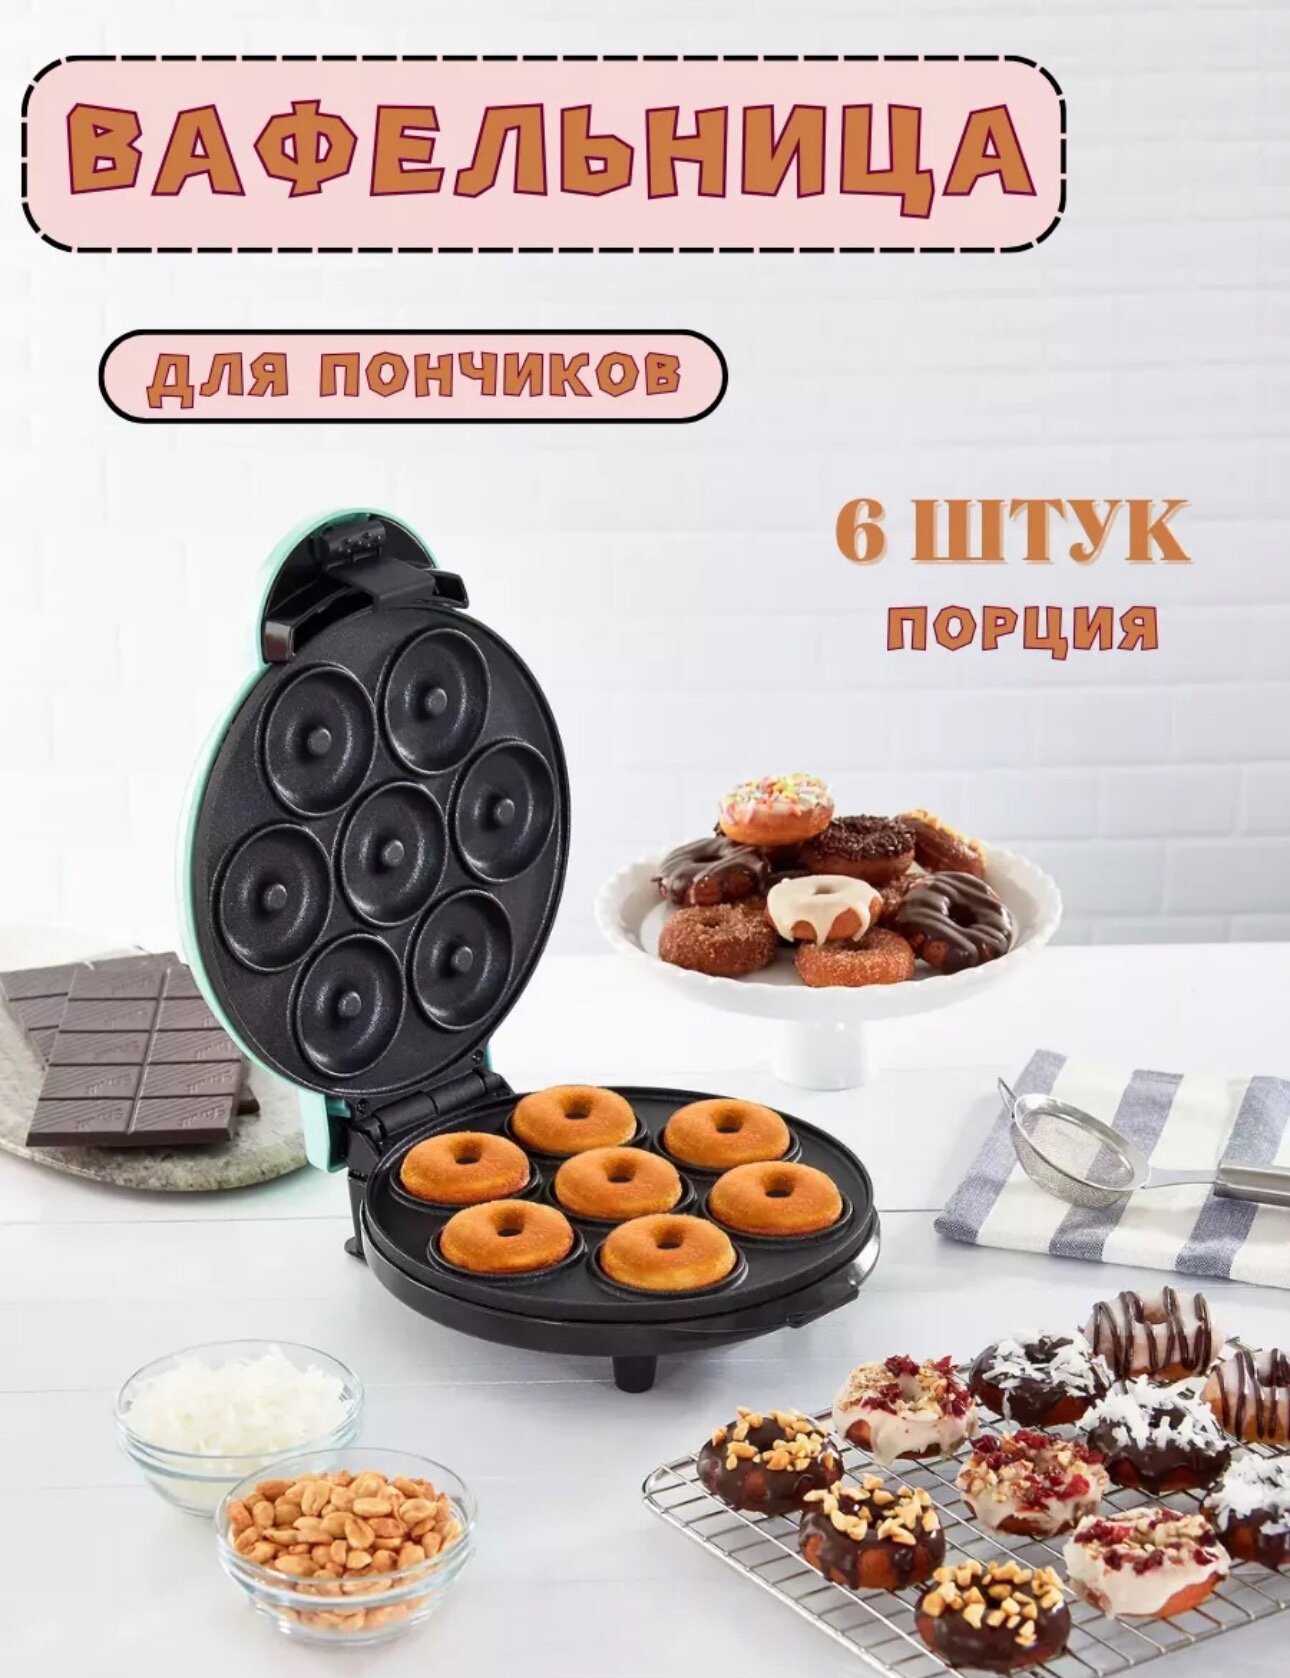 Электрическая вафельница для пончиков, прибор для выпечки пончиков, пончик-мейкер